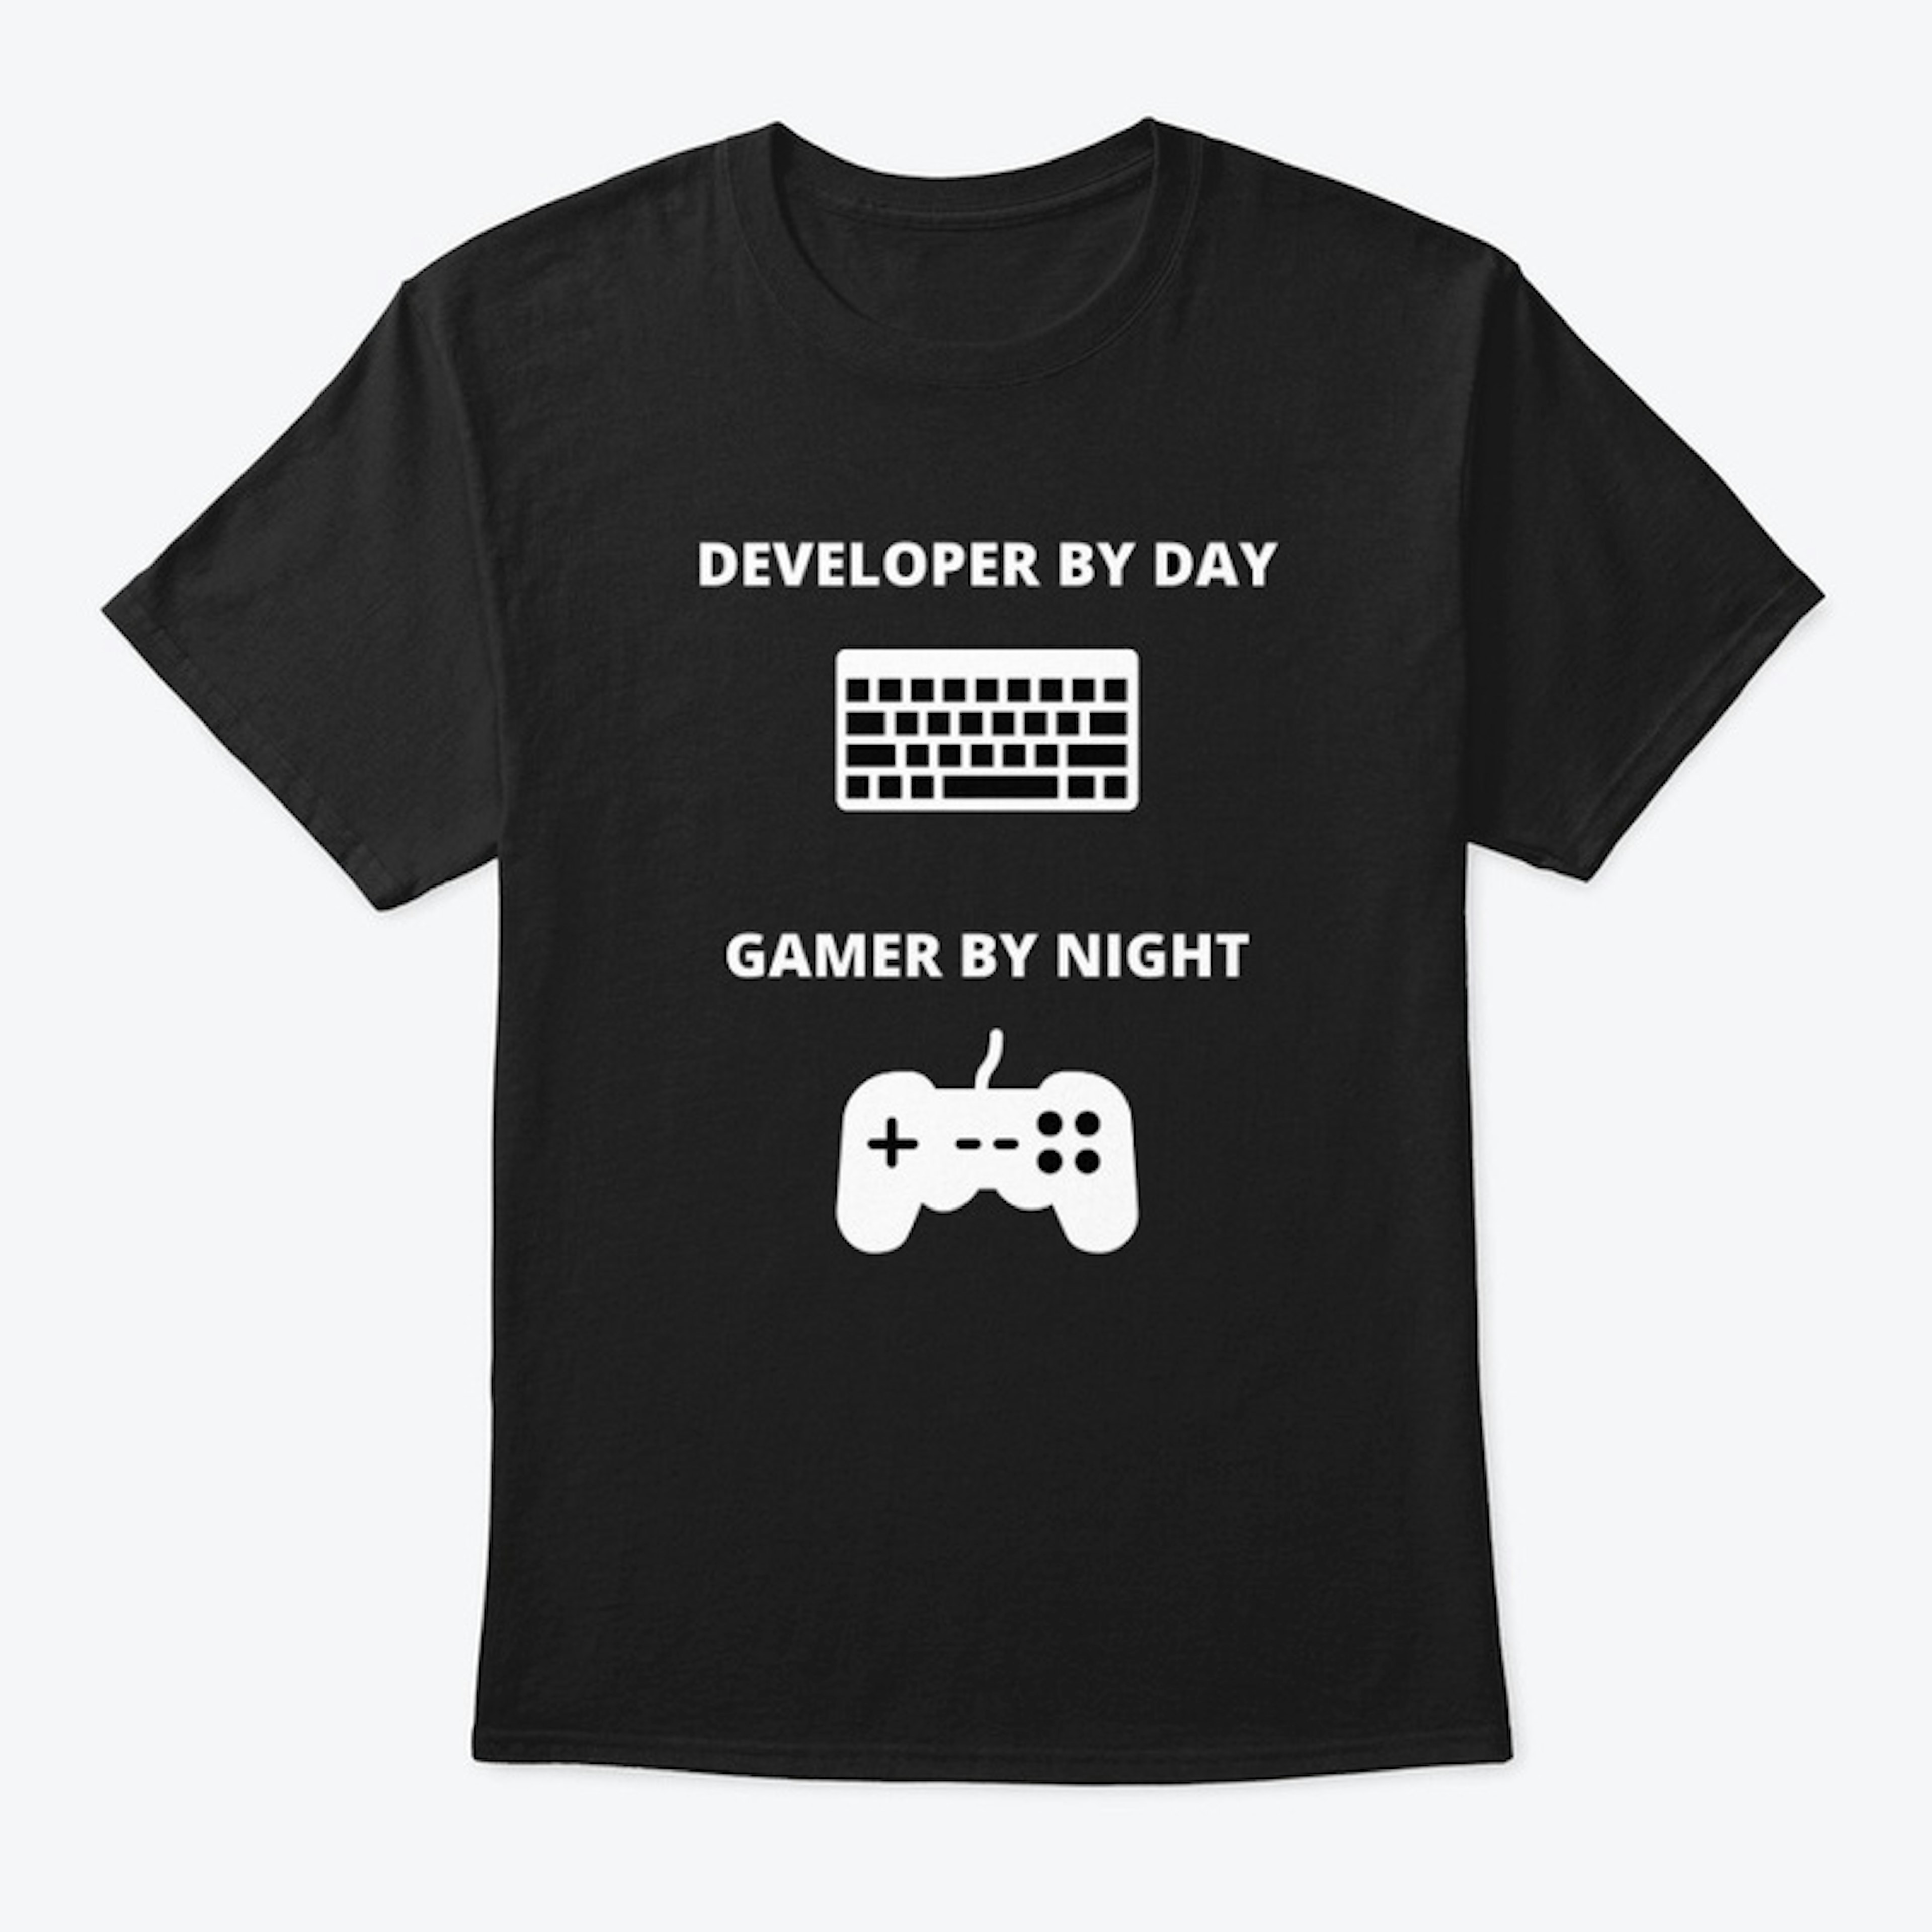 Developer by day - gamer by night